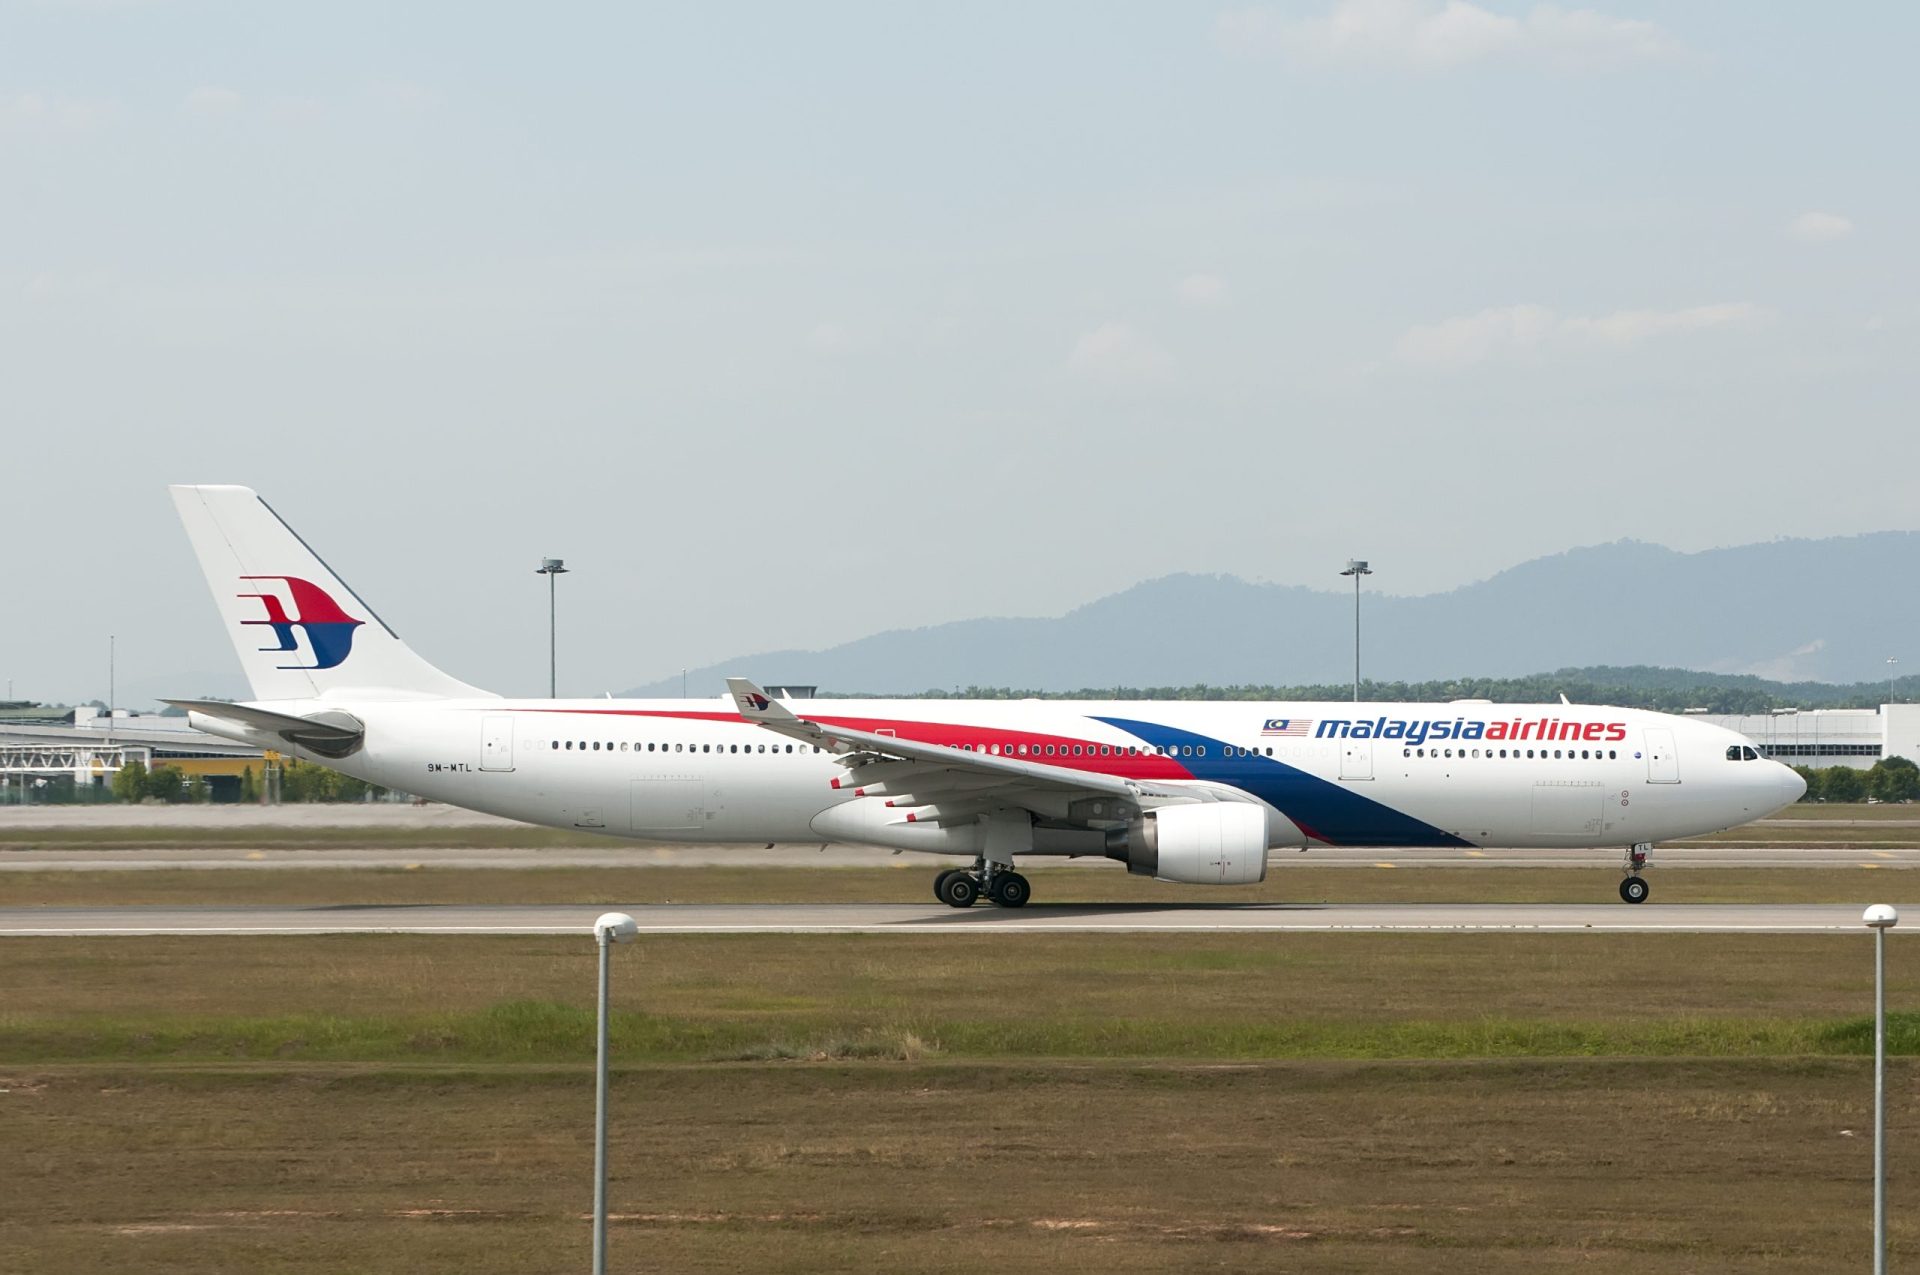 OFICIAL: Destroços encontrados são do avião da Malaysia Airlines